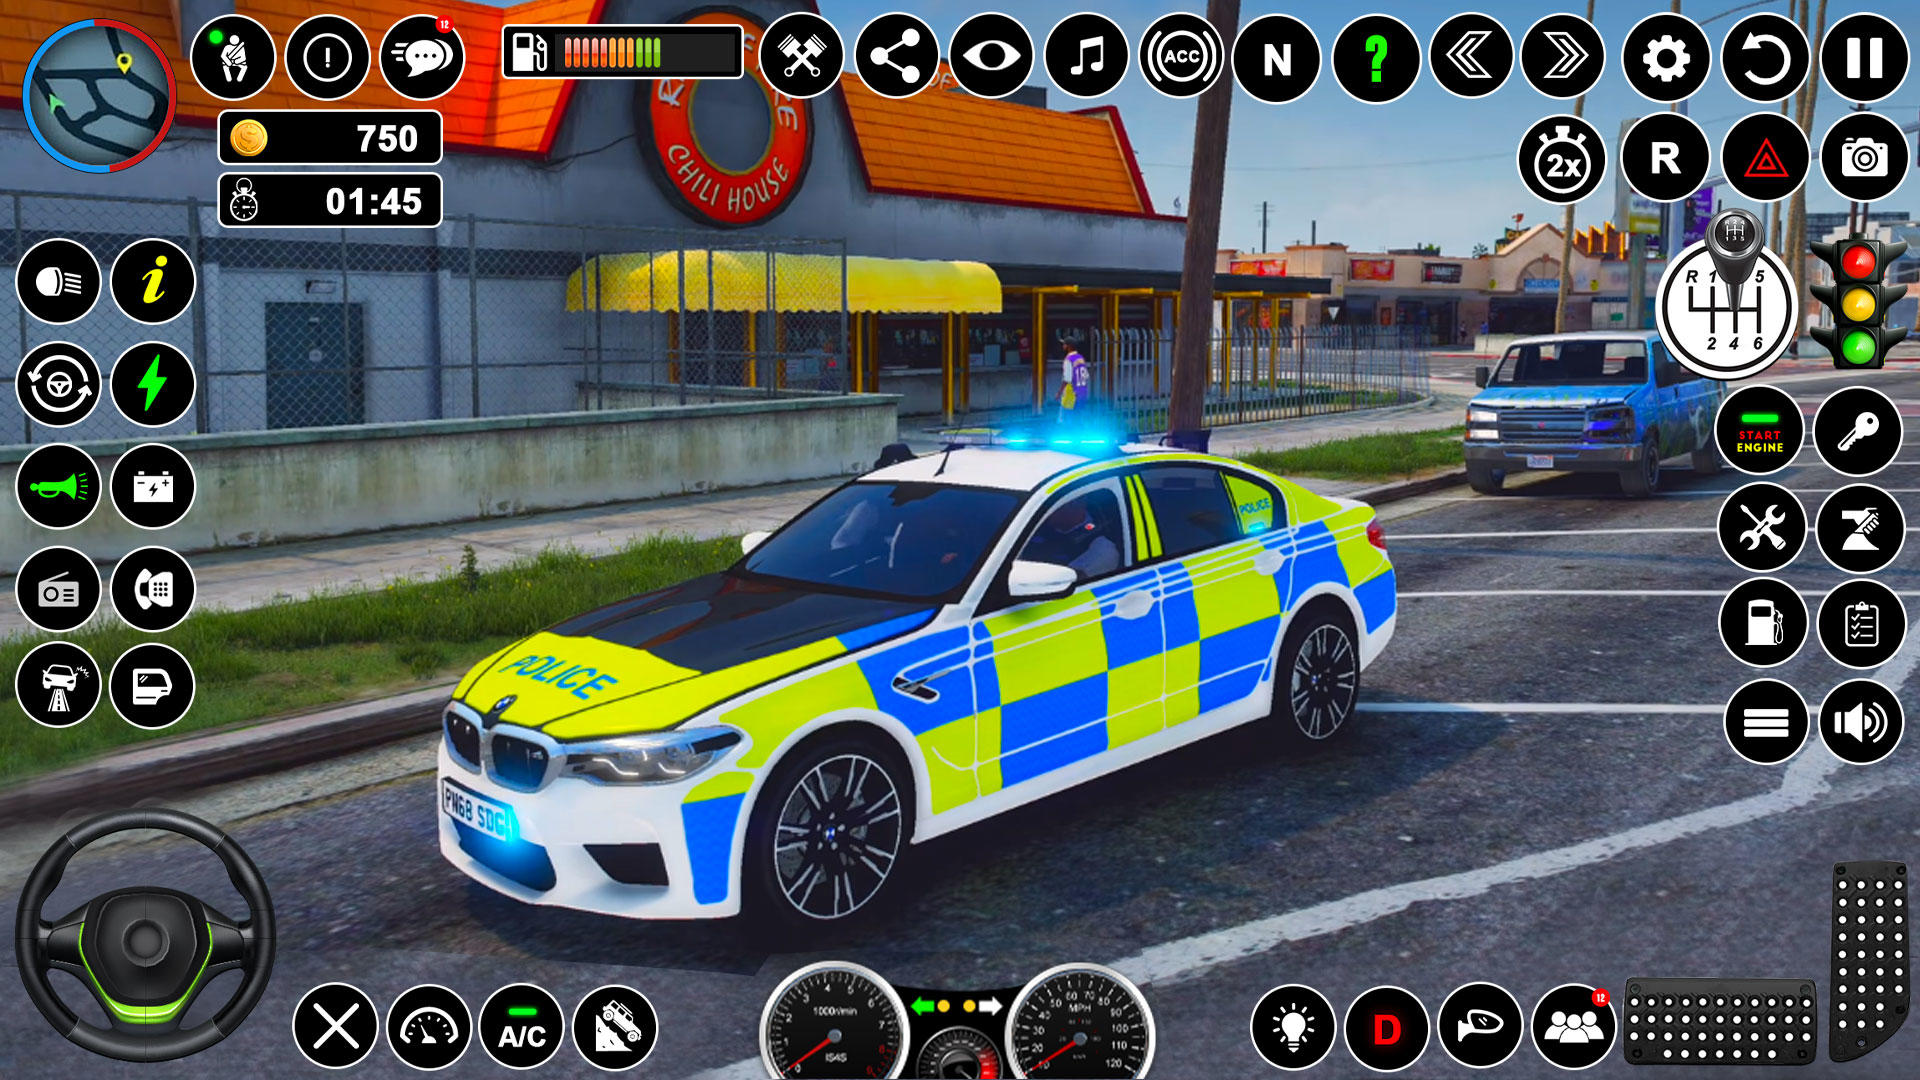 Juegos de Carros Policias - Conductor de Carro Policia - Juegos de